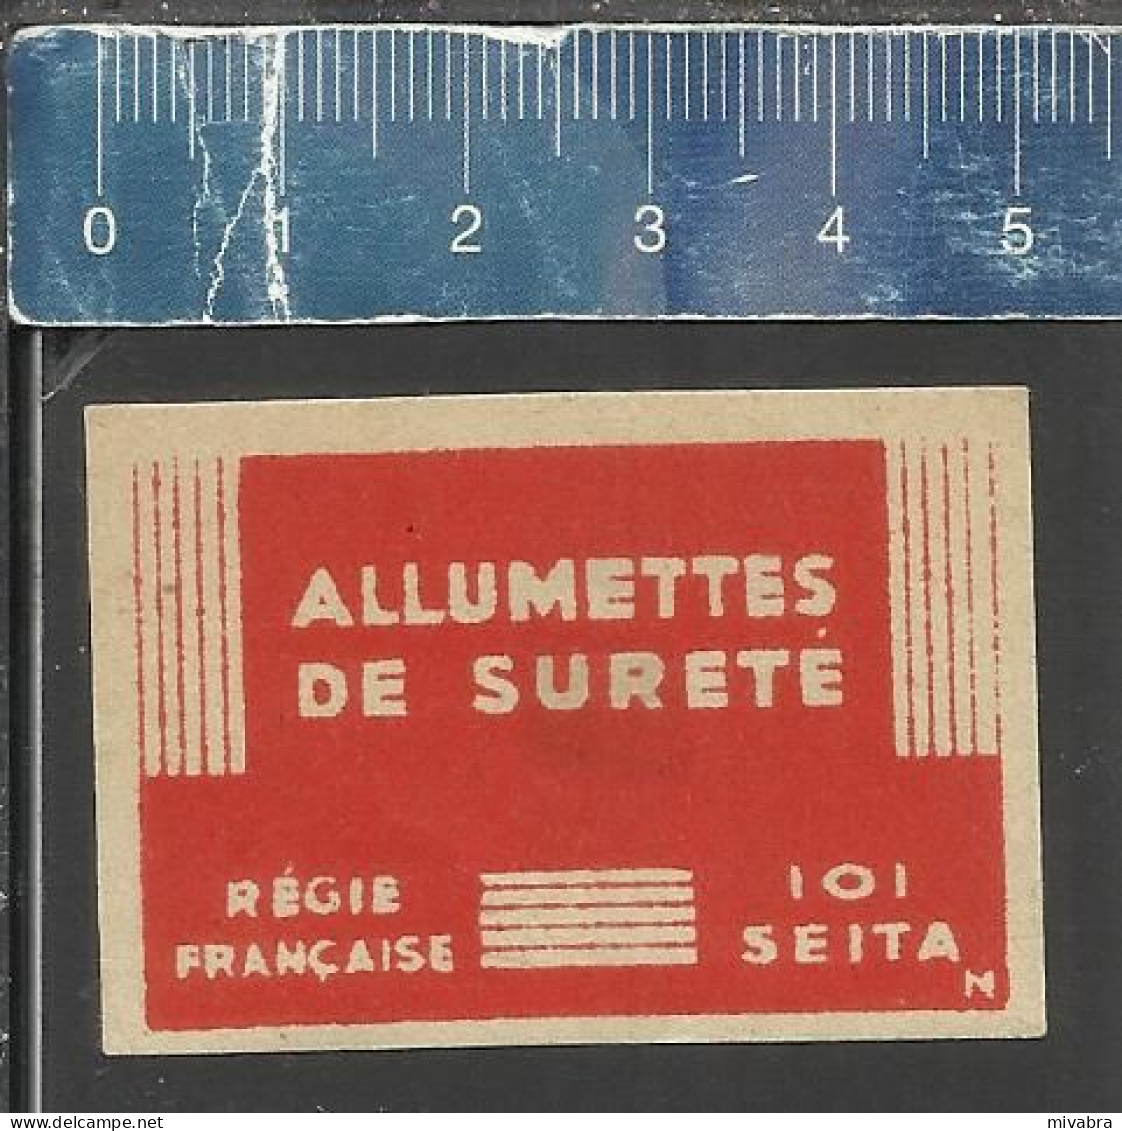 ALLUMETTES DE SURETÉ RÉGIE FRANÇAISE 101 SEITA ( AVEC LETTRE N) - OLD MATCHBOX LABEL FRANCE - Boites D'allumettes - Etiquettes